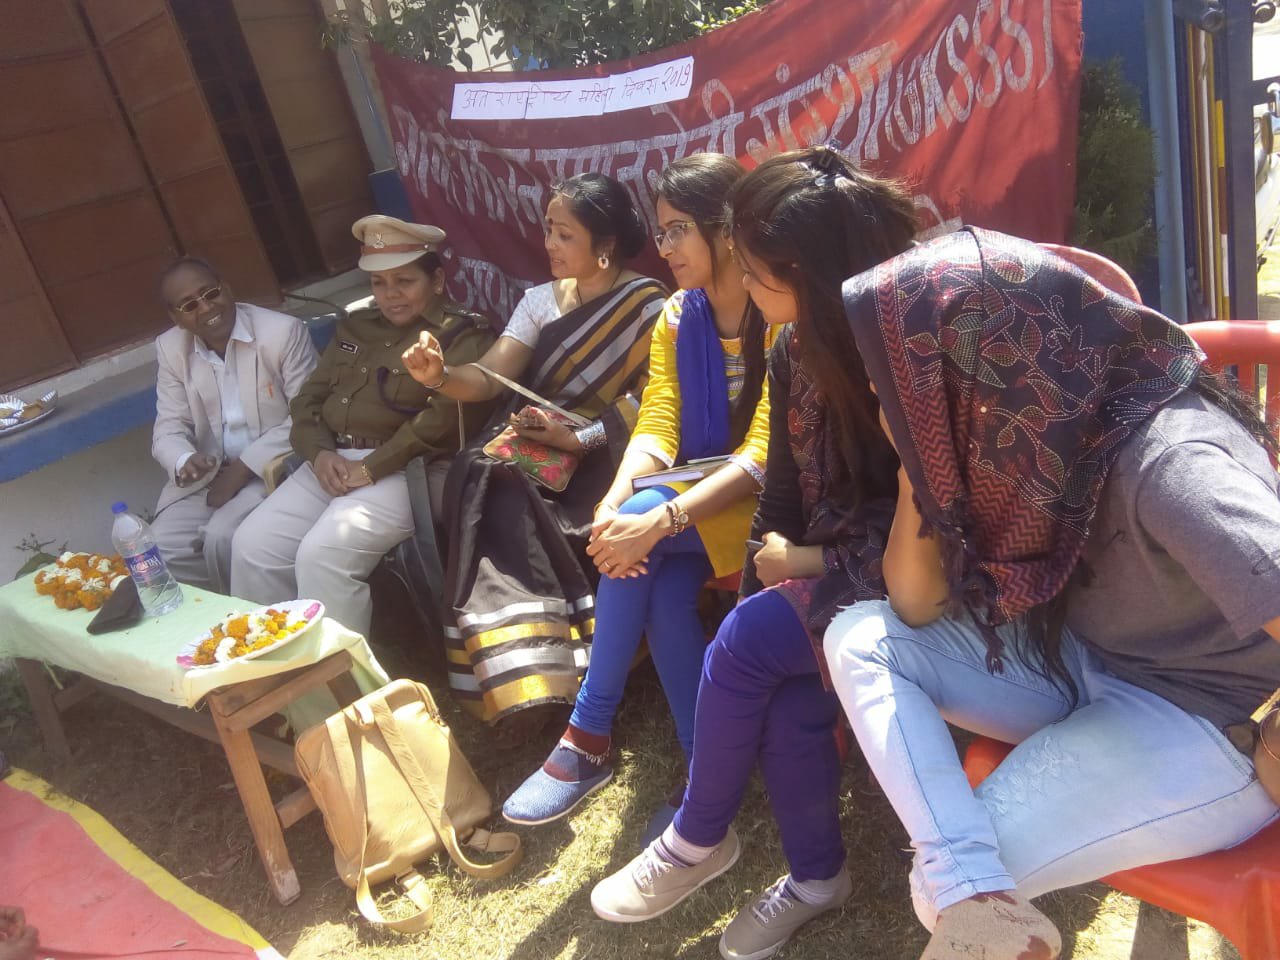 गोपाल किरण समाज सेवी संस्था ग्वालियर द्वारा अंतर्राष्ट्रीय महिला दिवस पर कार्यक्रम आयोजित, "दुनिया की लगभग आधी आबादी महिलाओं की है, इसलिए जब तक उनका समुचित विकास नहीं होता तब तक कोई भी देश चहुंमुखी विकास नहीं कर सकता": श्रीप्रकाश सिंह निमराजे | New India Times